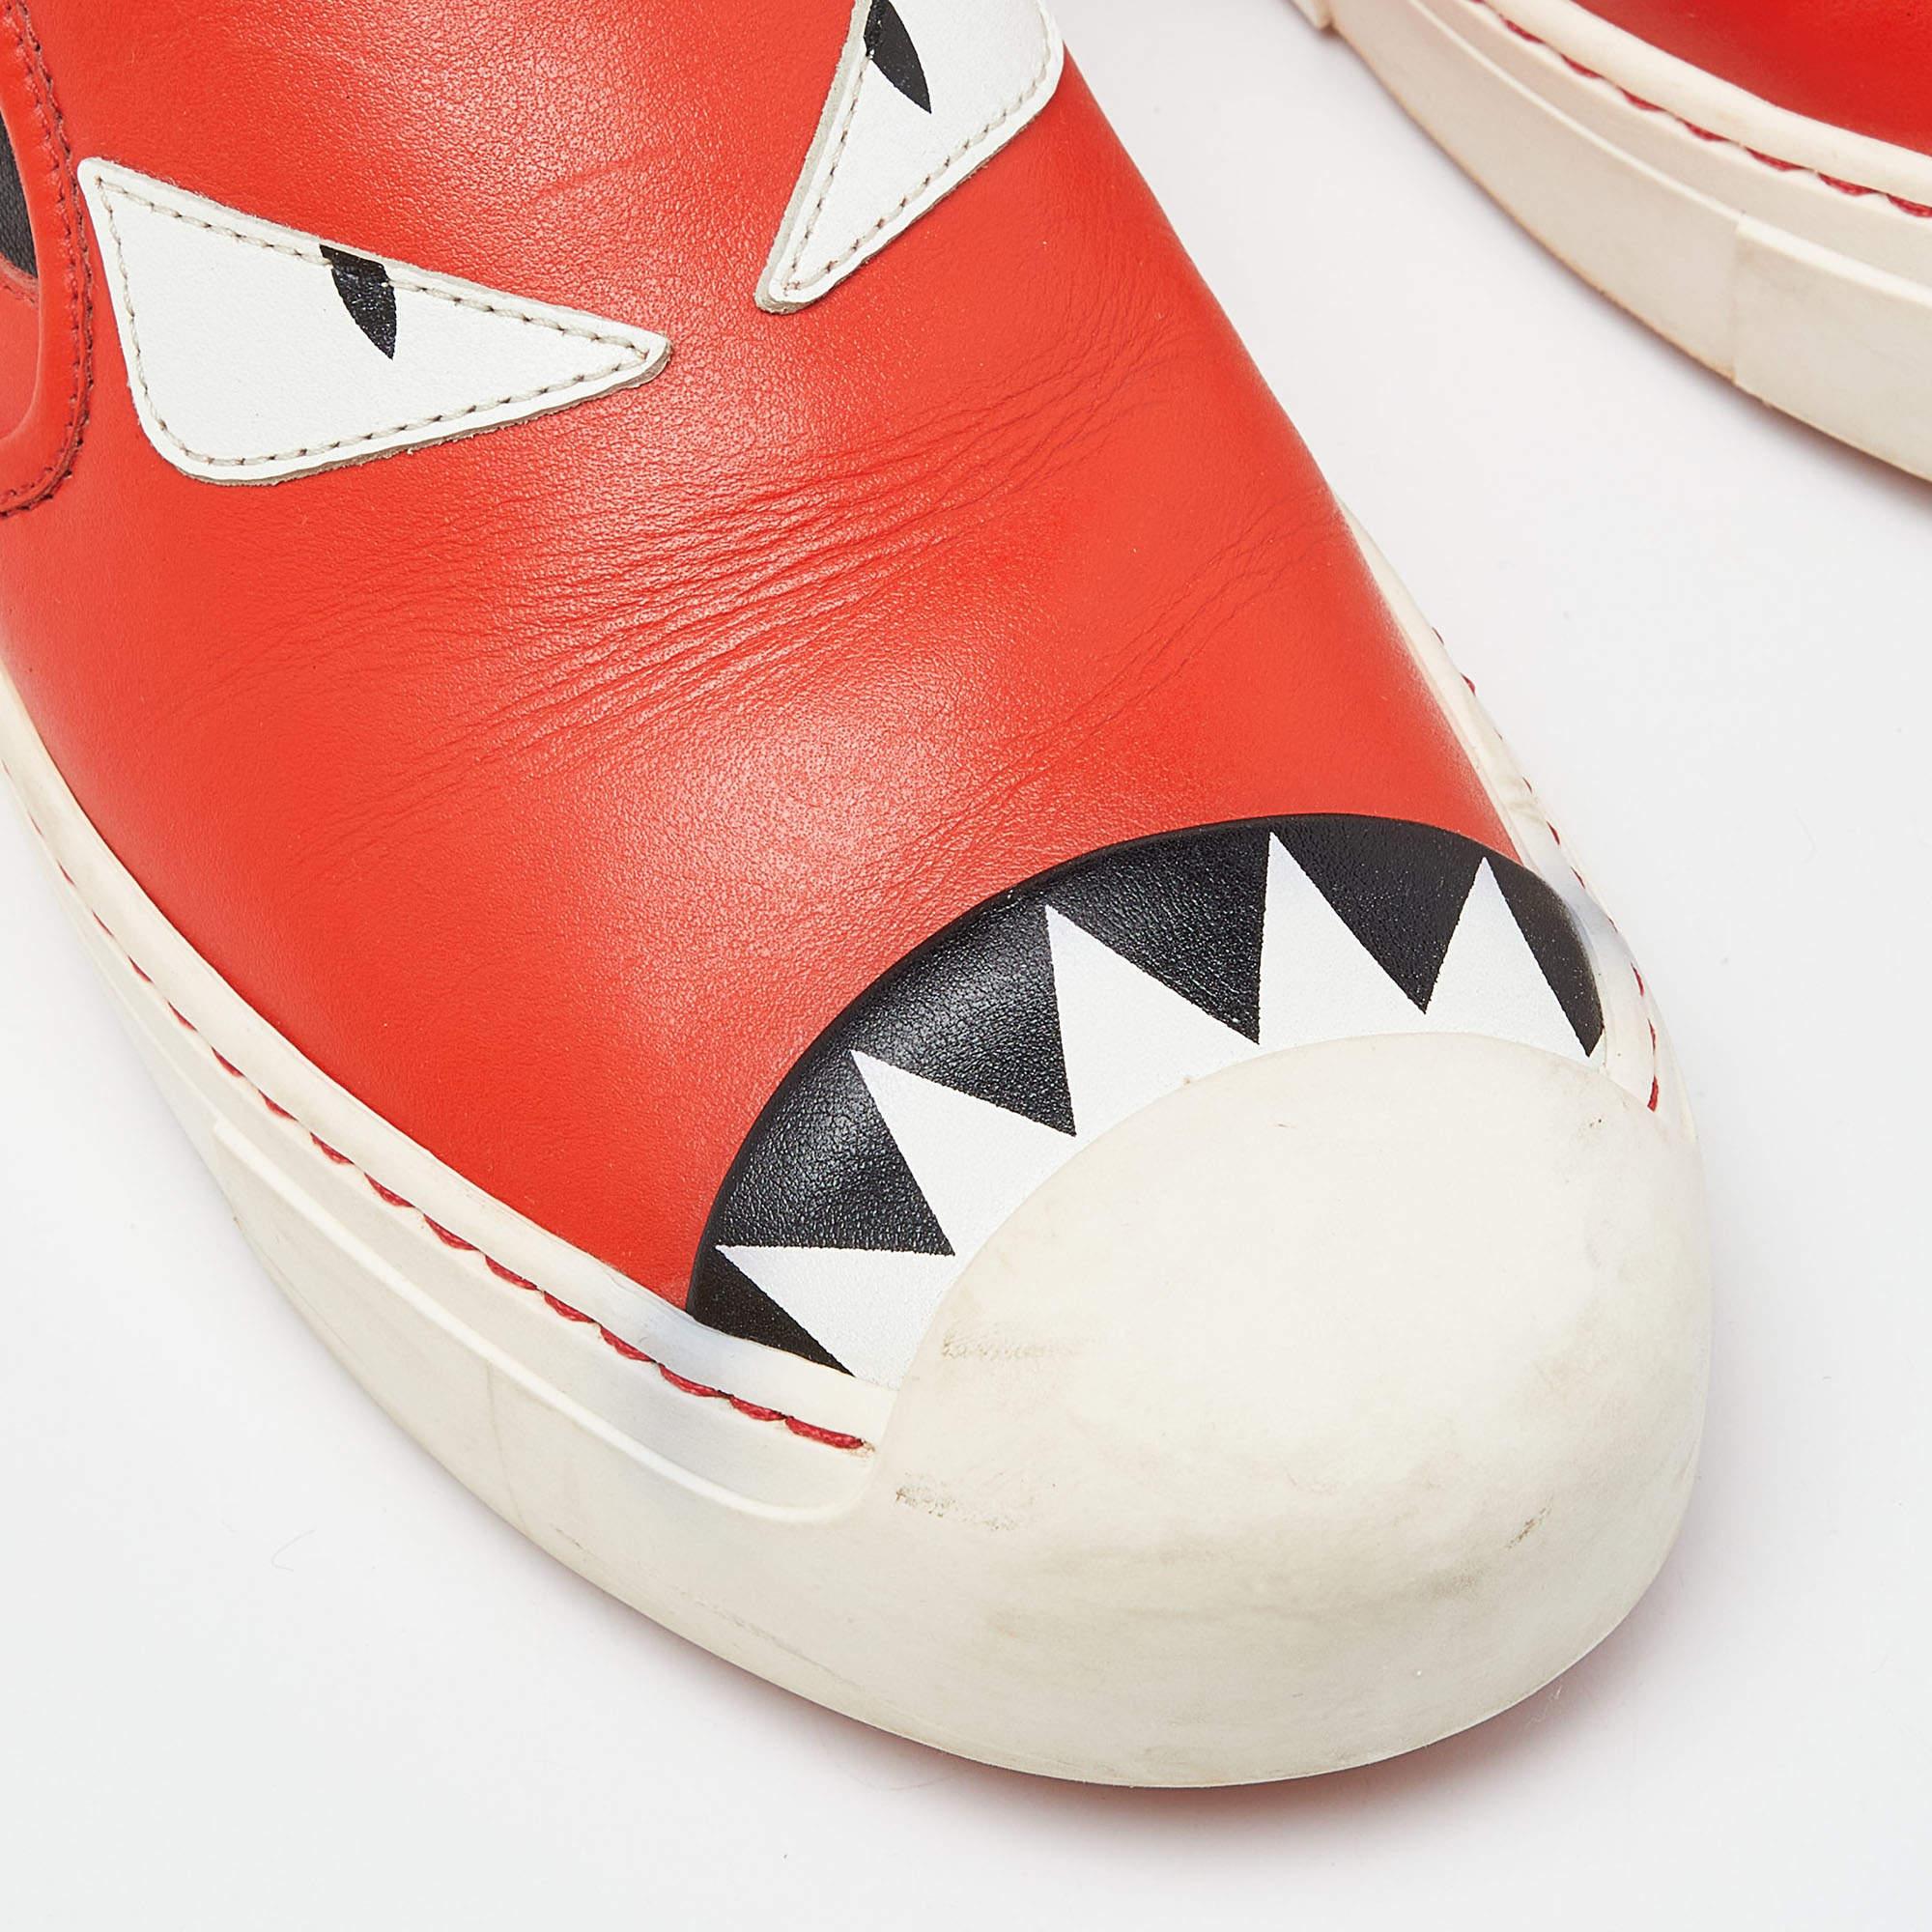 Fendi Tri Color Leather Monster Slip On Sneakers Size 38.5 In Good Condition For Sale In Dubai, Al Qouz 2